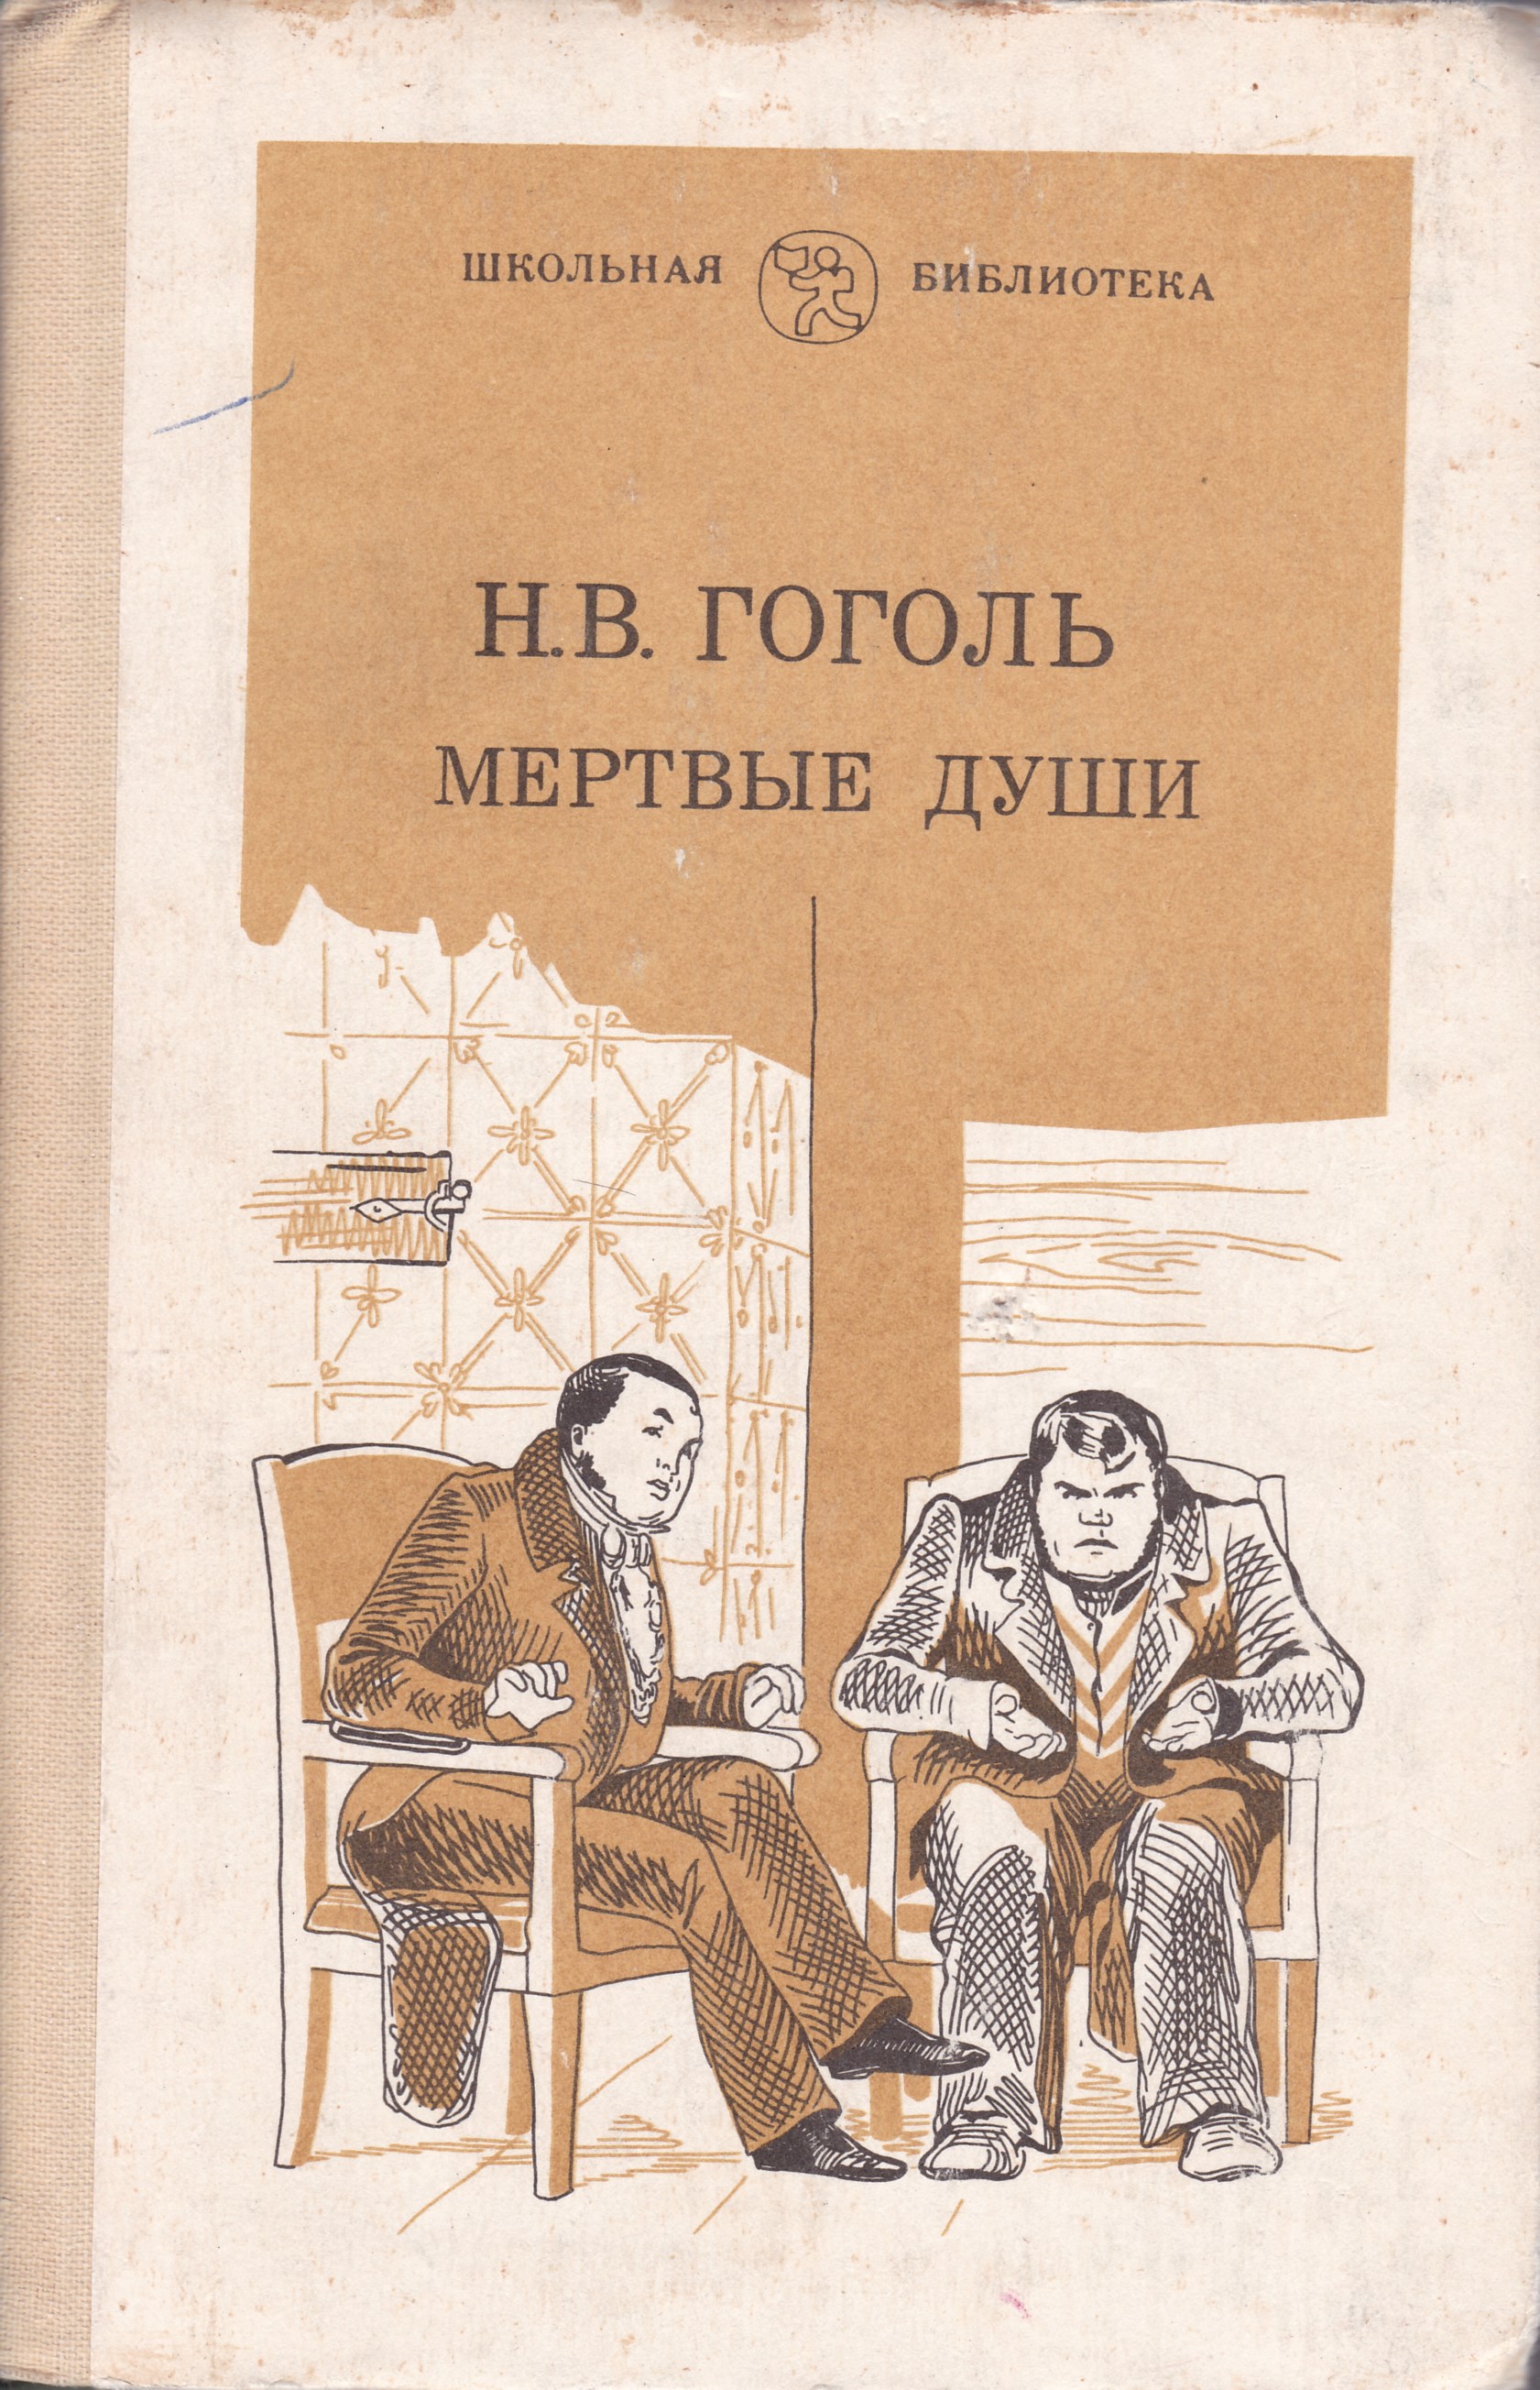 Мертвые души поэма книга. Гоголь мертвые души Школьная библиотека. Гоголь н. в. "мертвые души" 1839. Гоголь мертвые души книга.